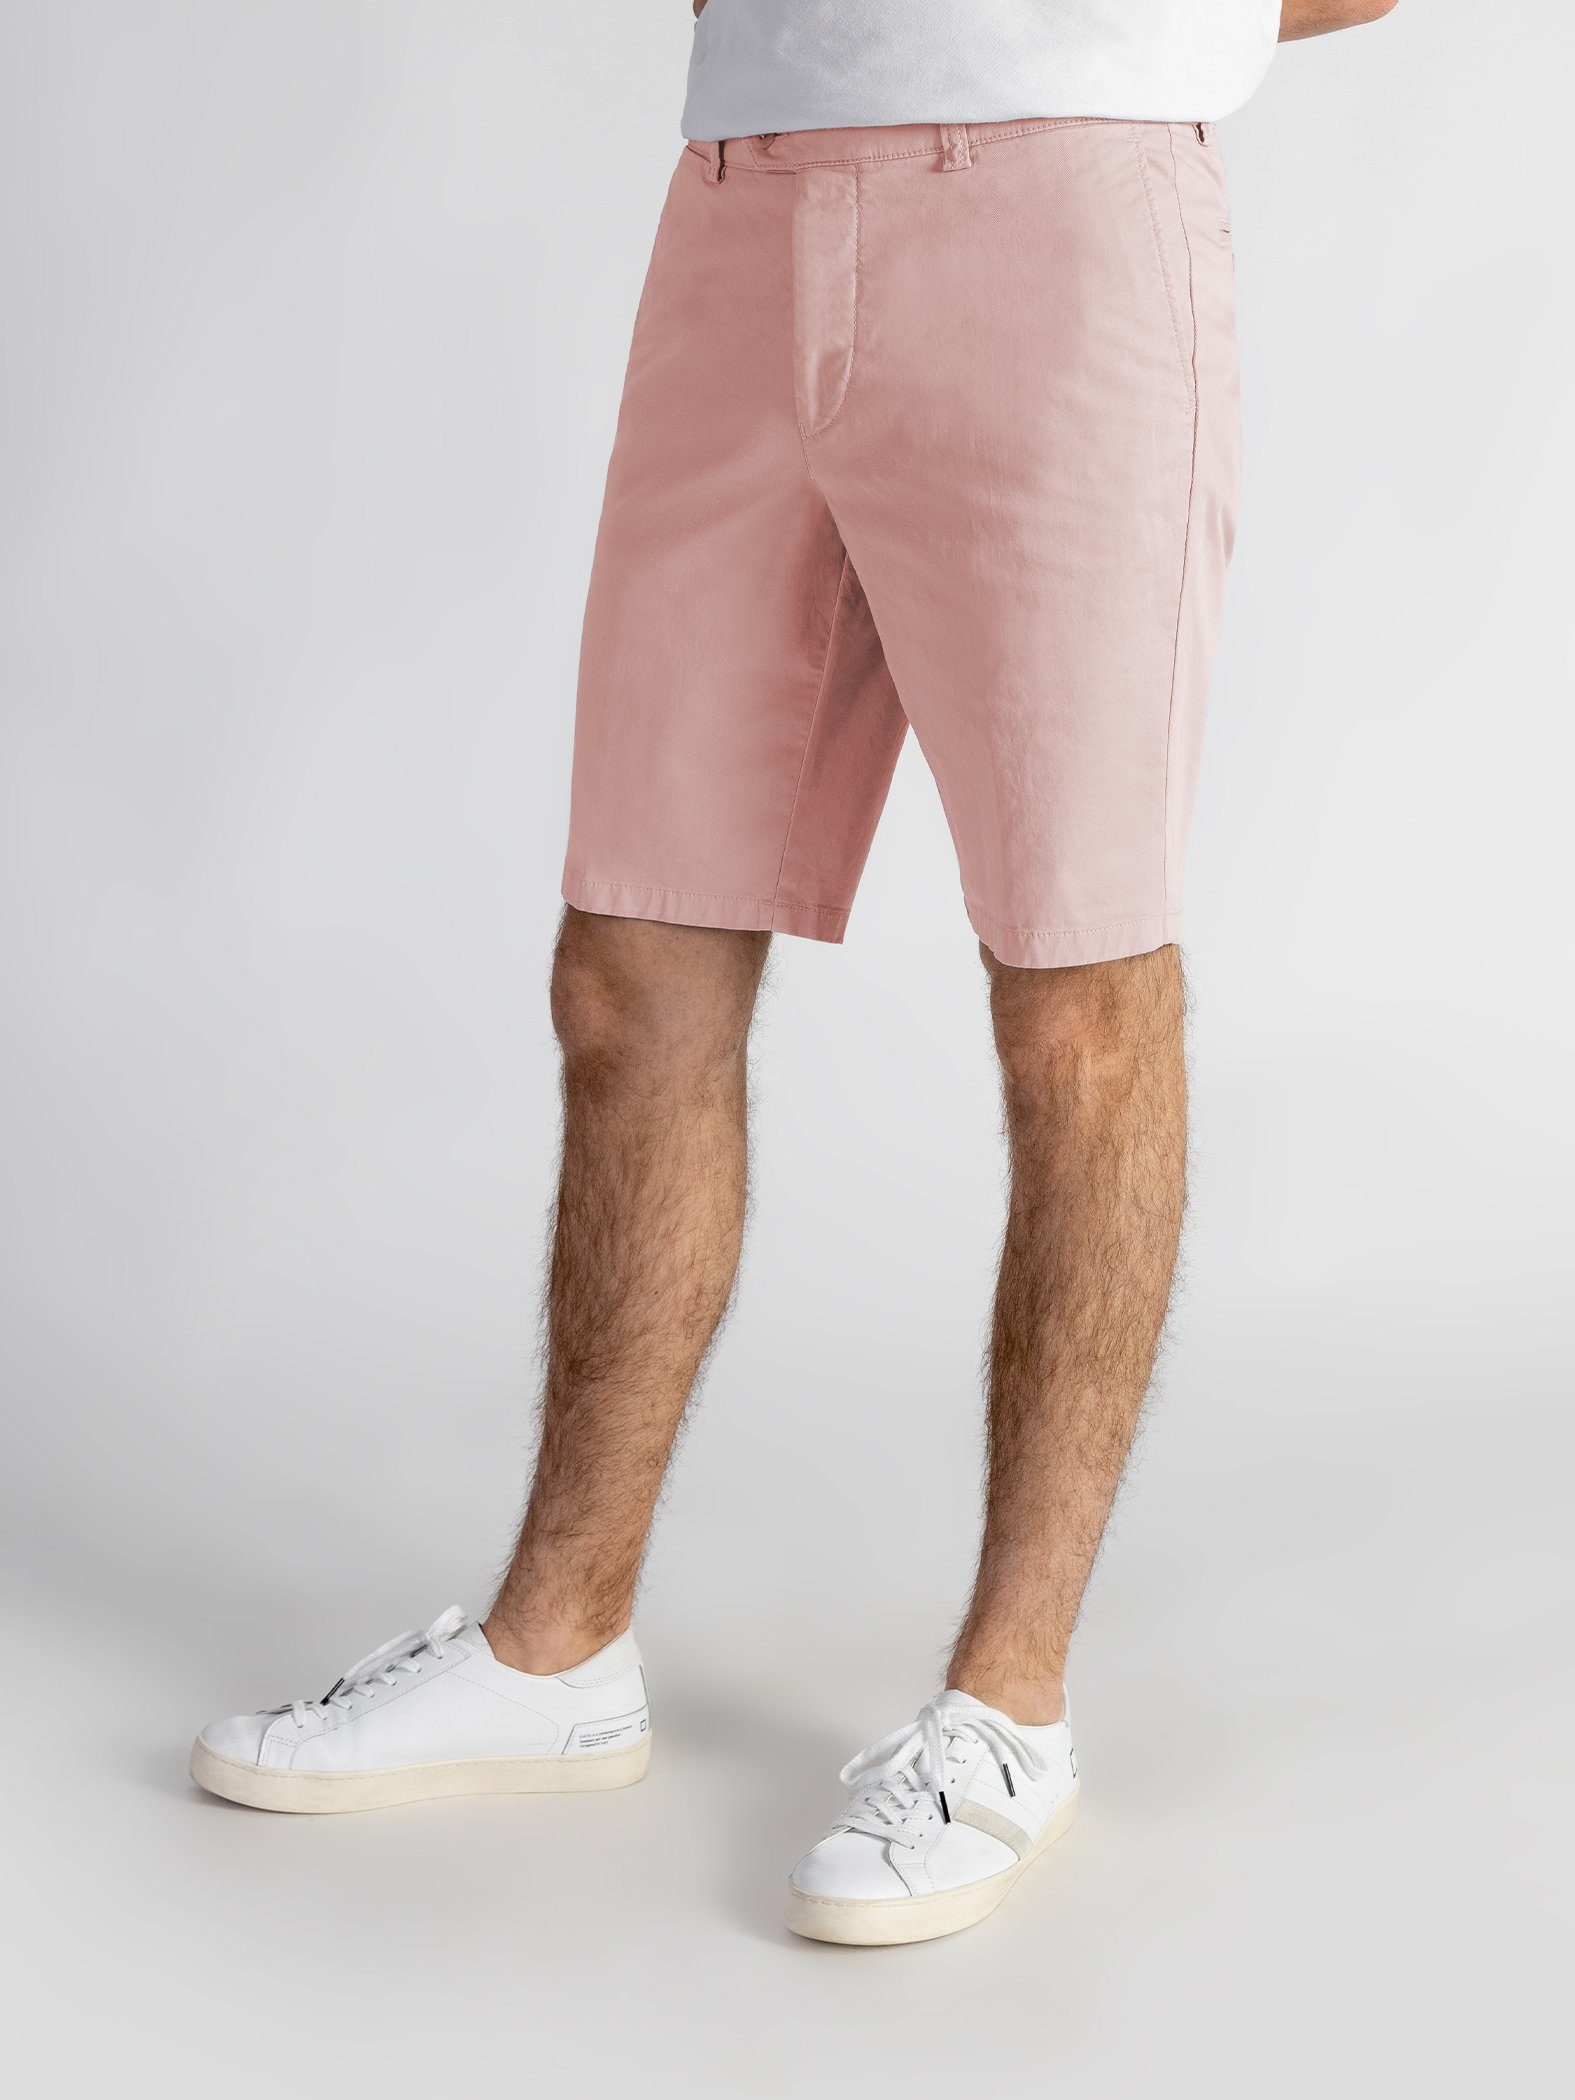 Shorts Farbauswahl, rosa GOTS-zertifiziert Bund, mit elastischem Shorts TwoMates